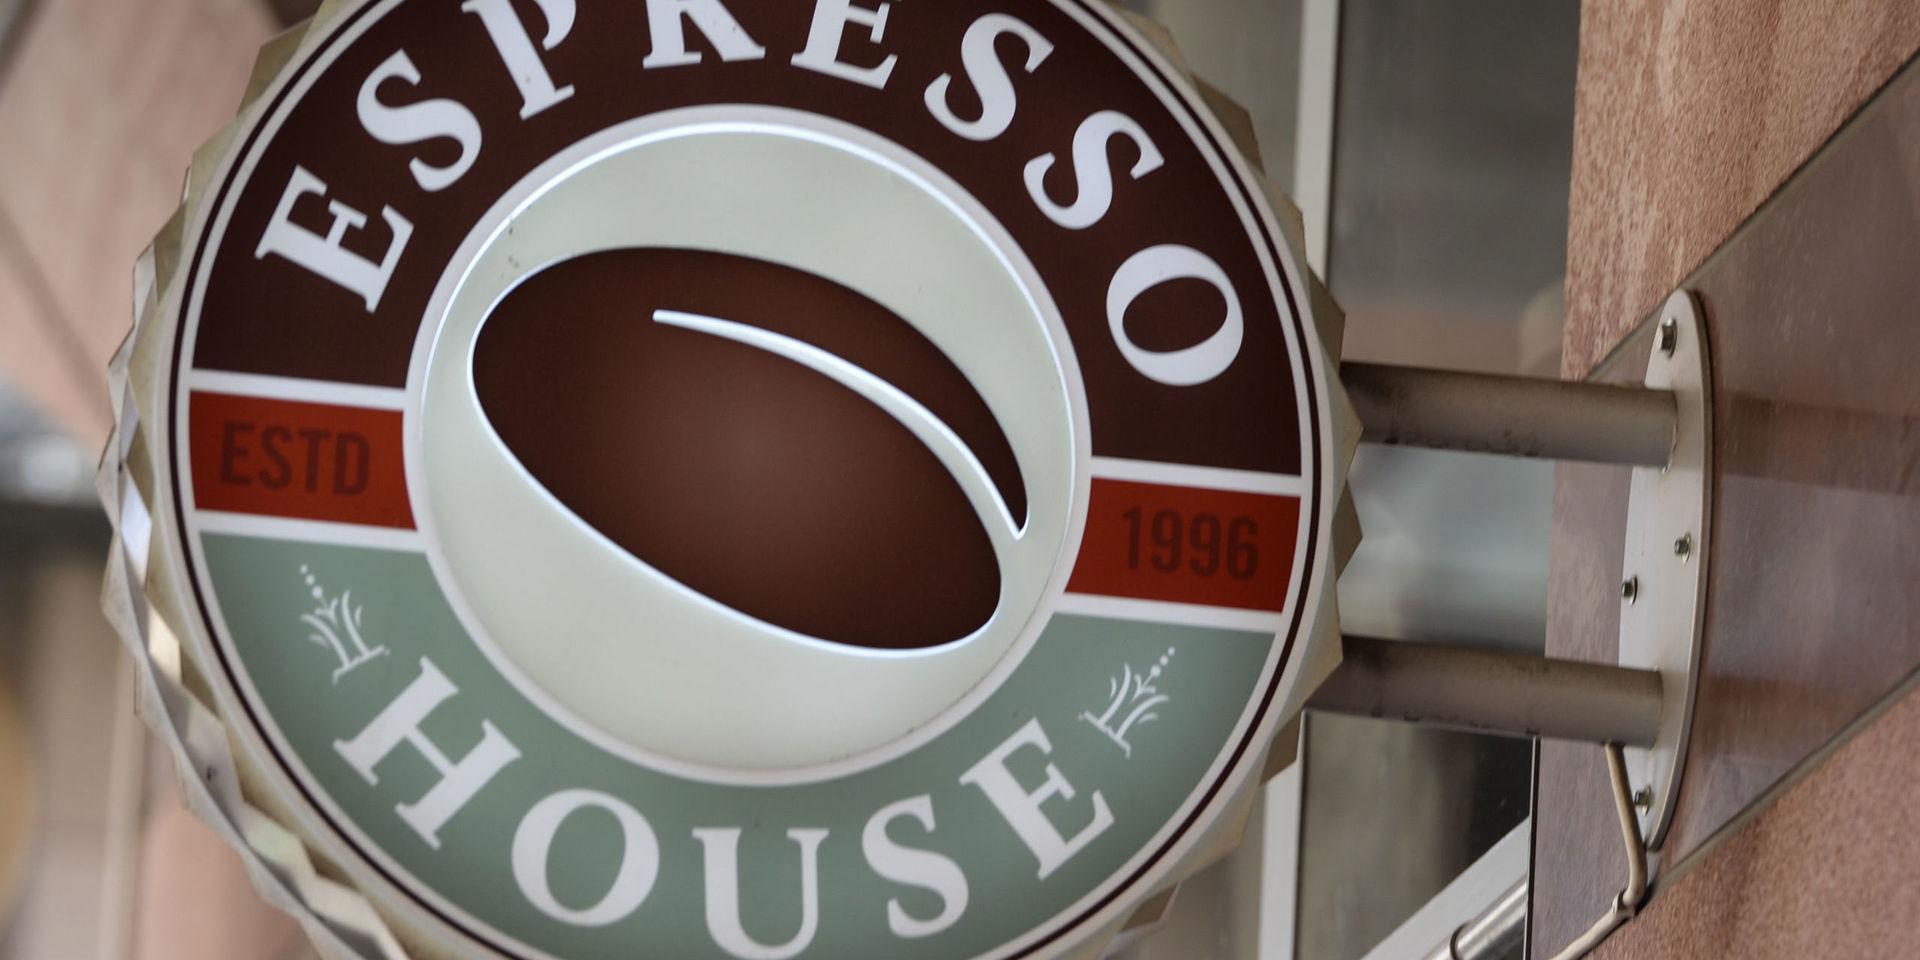 Hotell- och restaurangfacket ska besöka samtliga Espresso House-fik i Sverige för att informera om arbetsrätt.